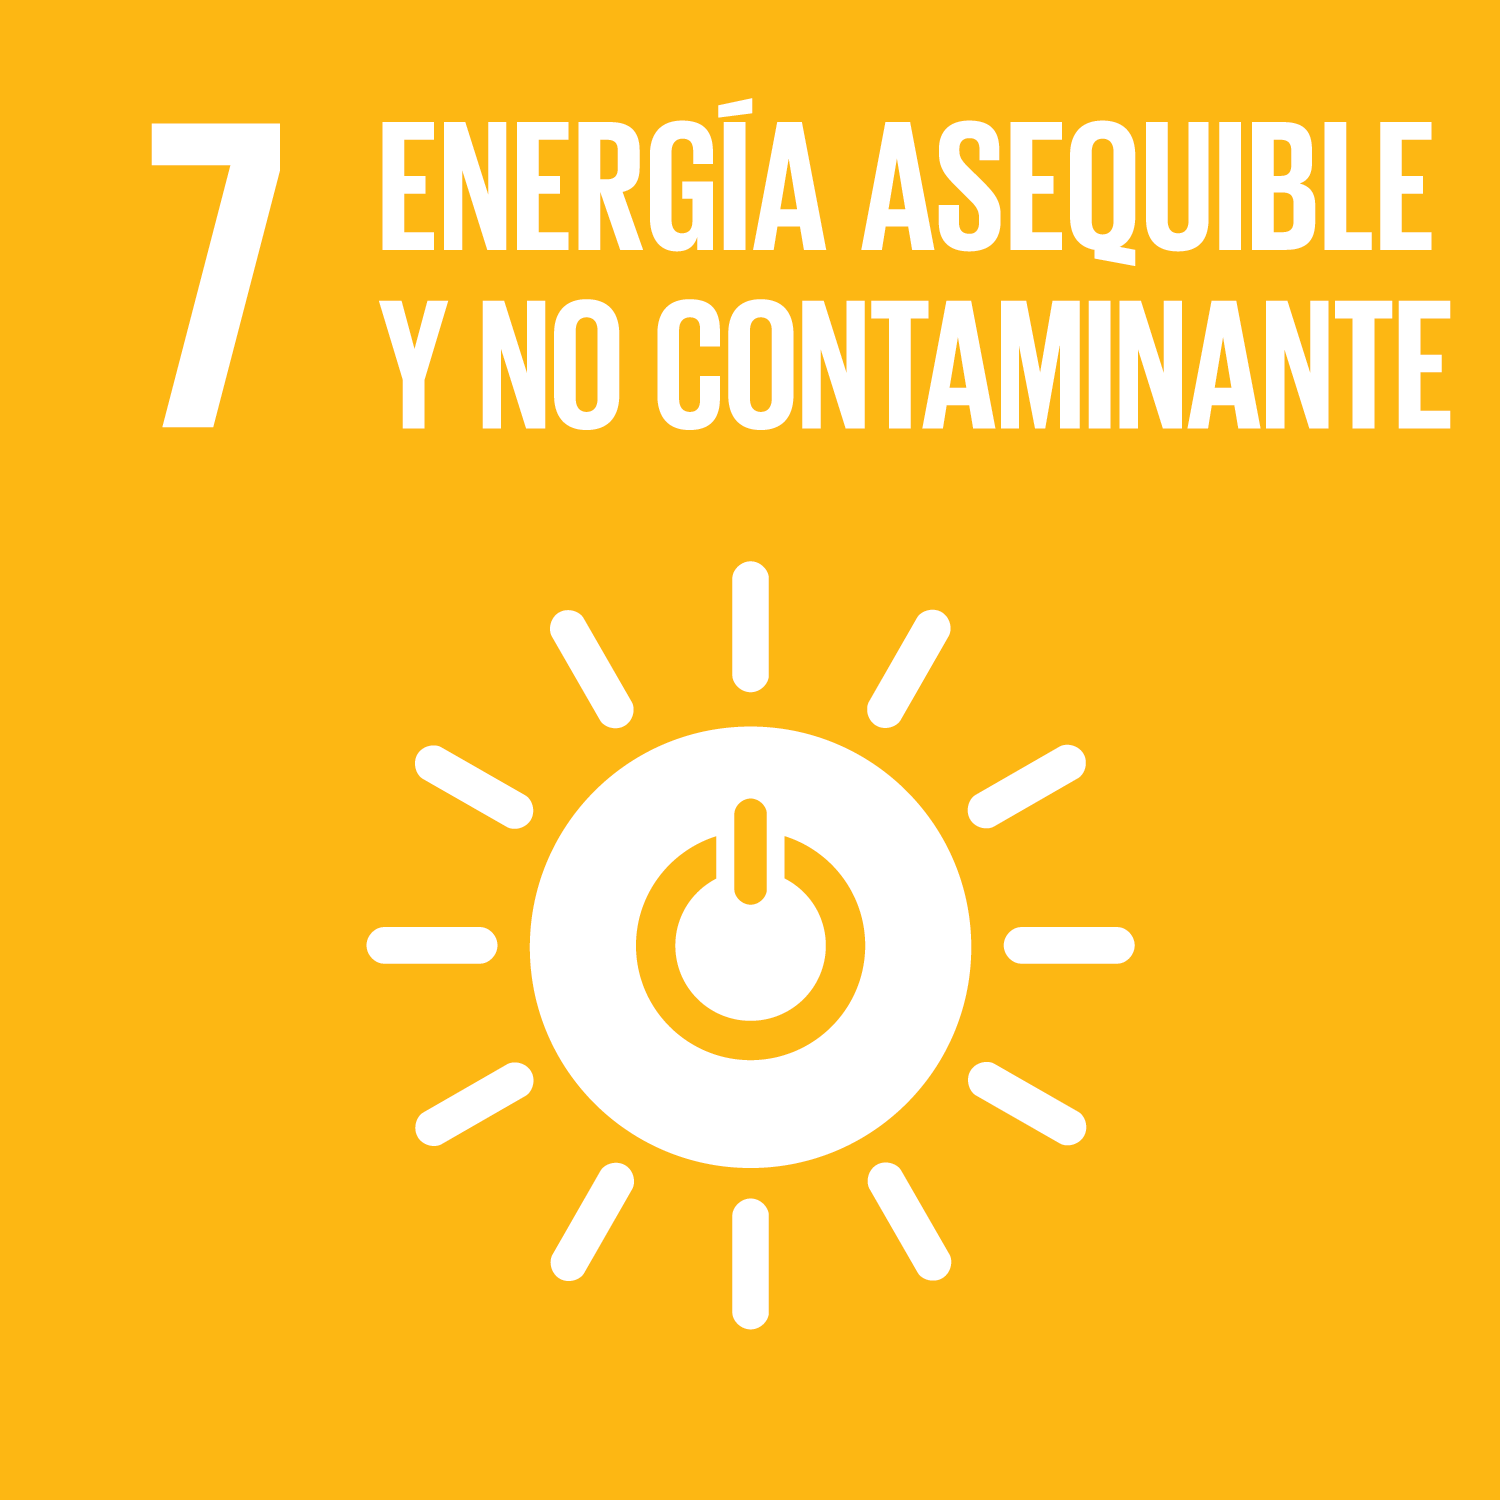 ODS Objetivo 7: Energía asequible y no contaminante